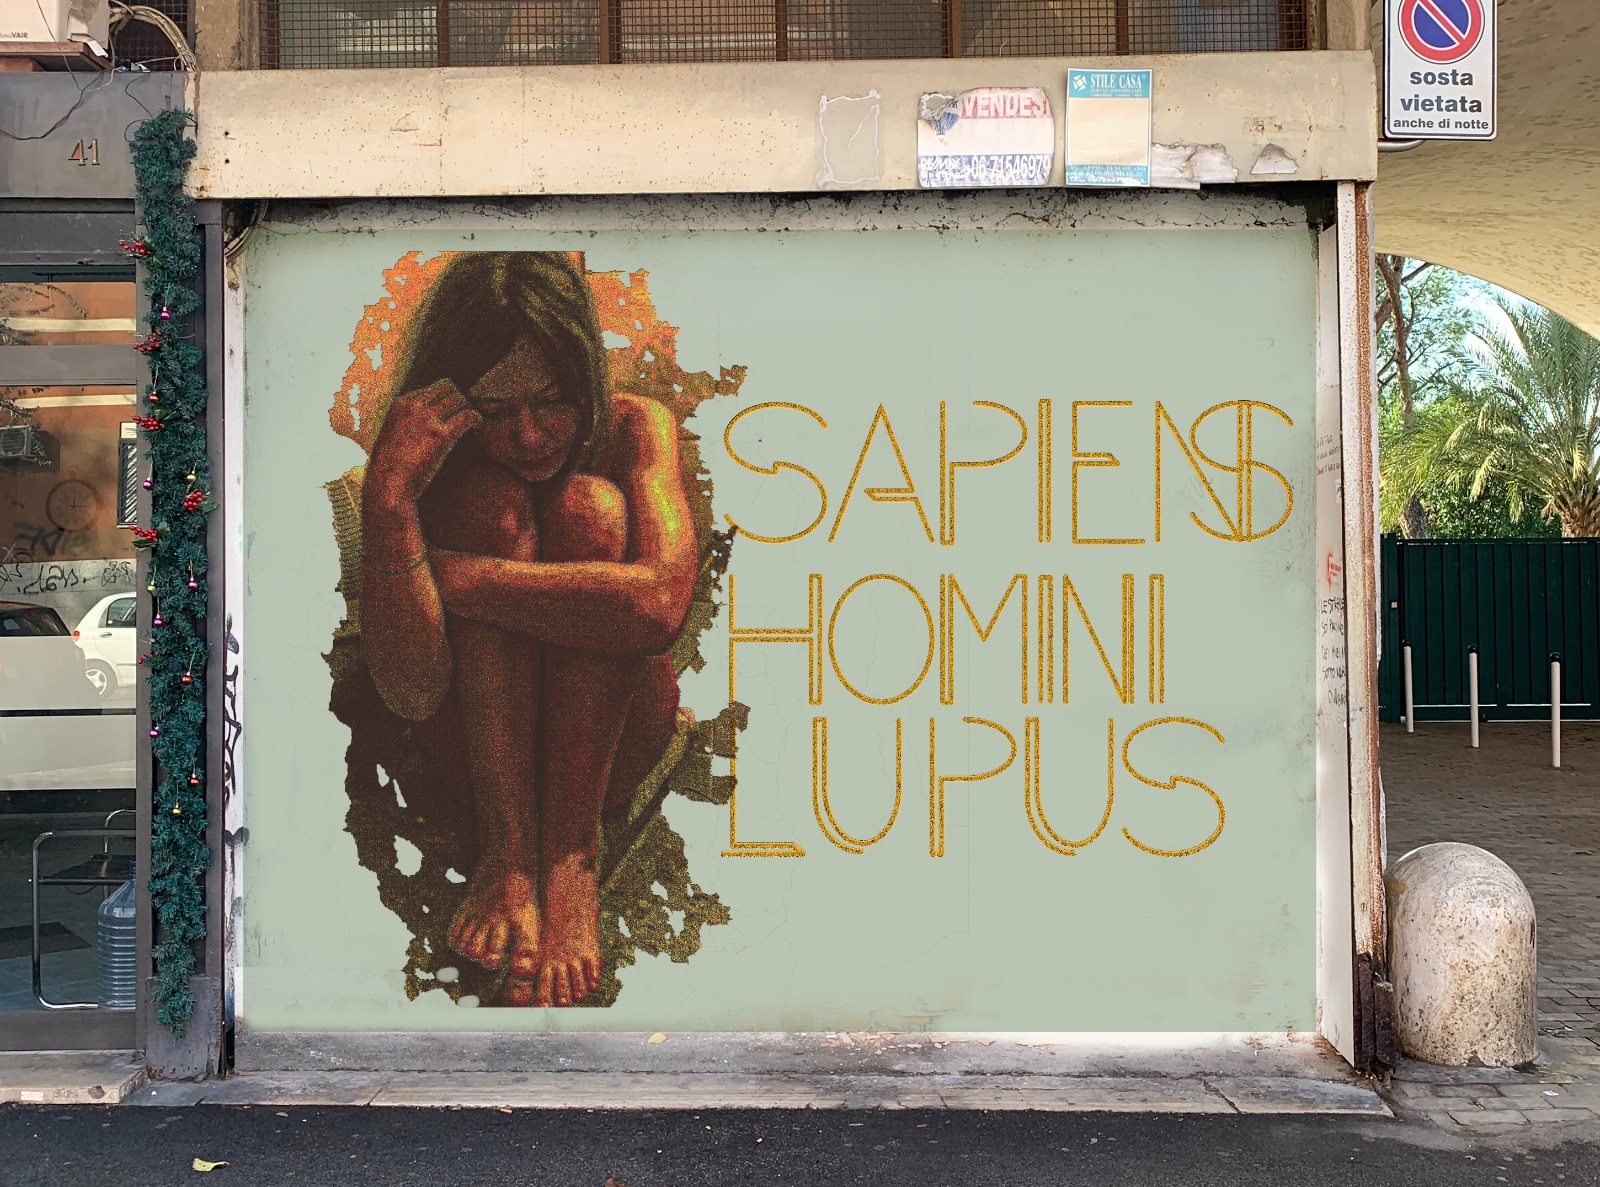 The Astronut in “Sapiens Homini Lupus”